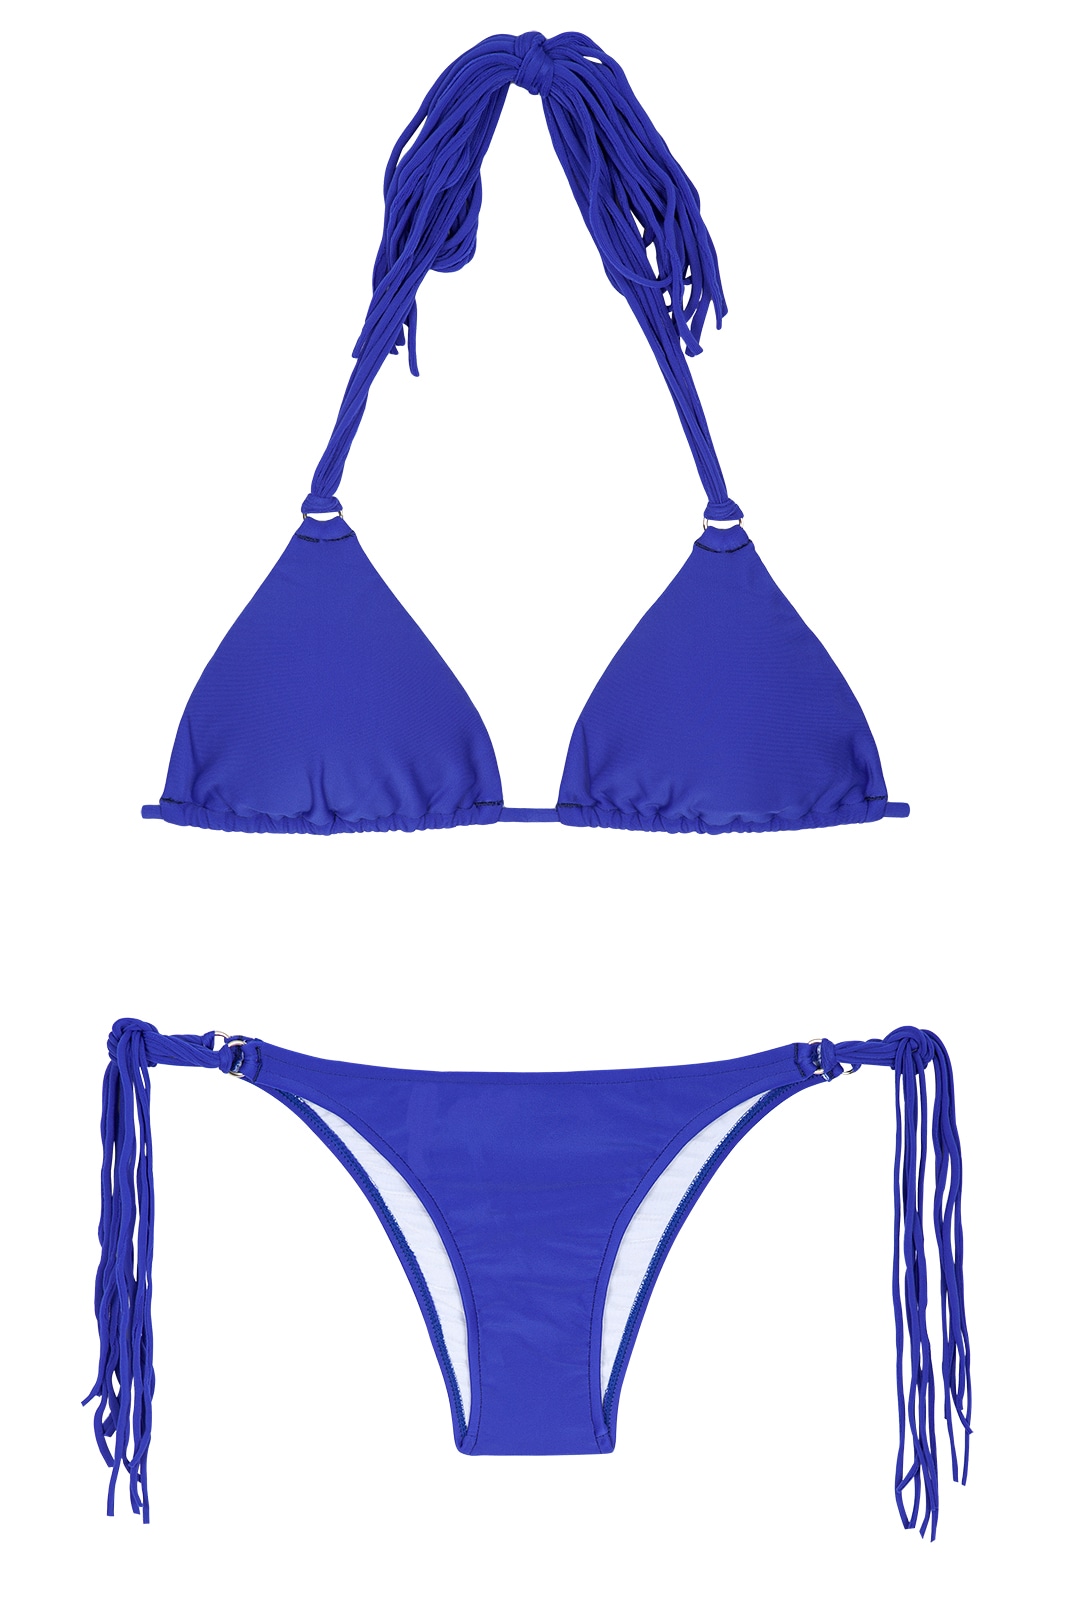 Dark Blue Triangle Bikini With Long Tassels - Franja Zaffiro - Rio de Sol